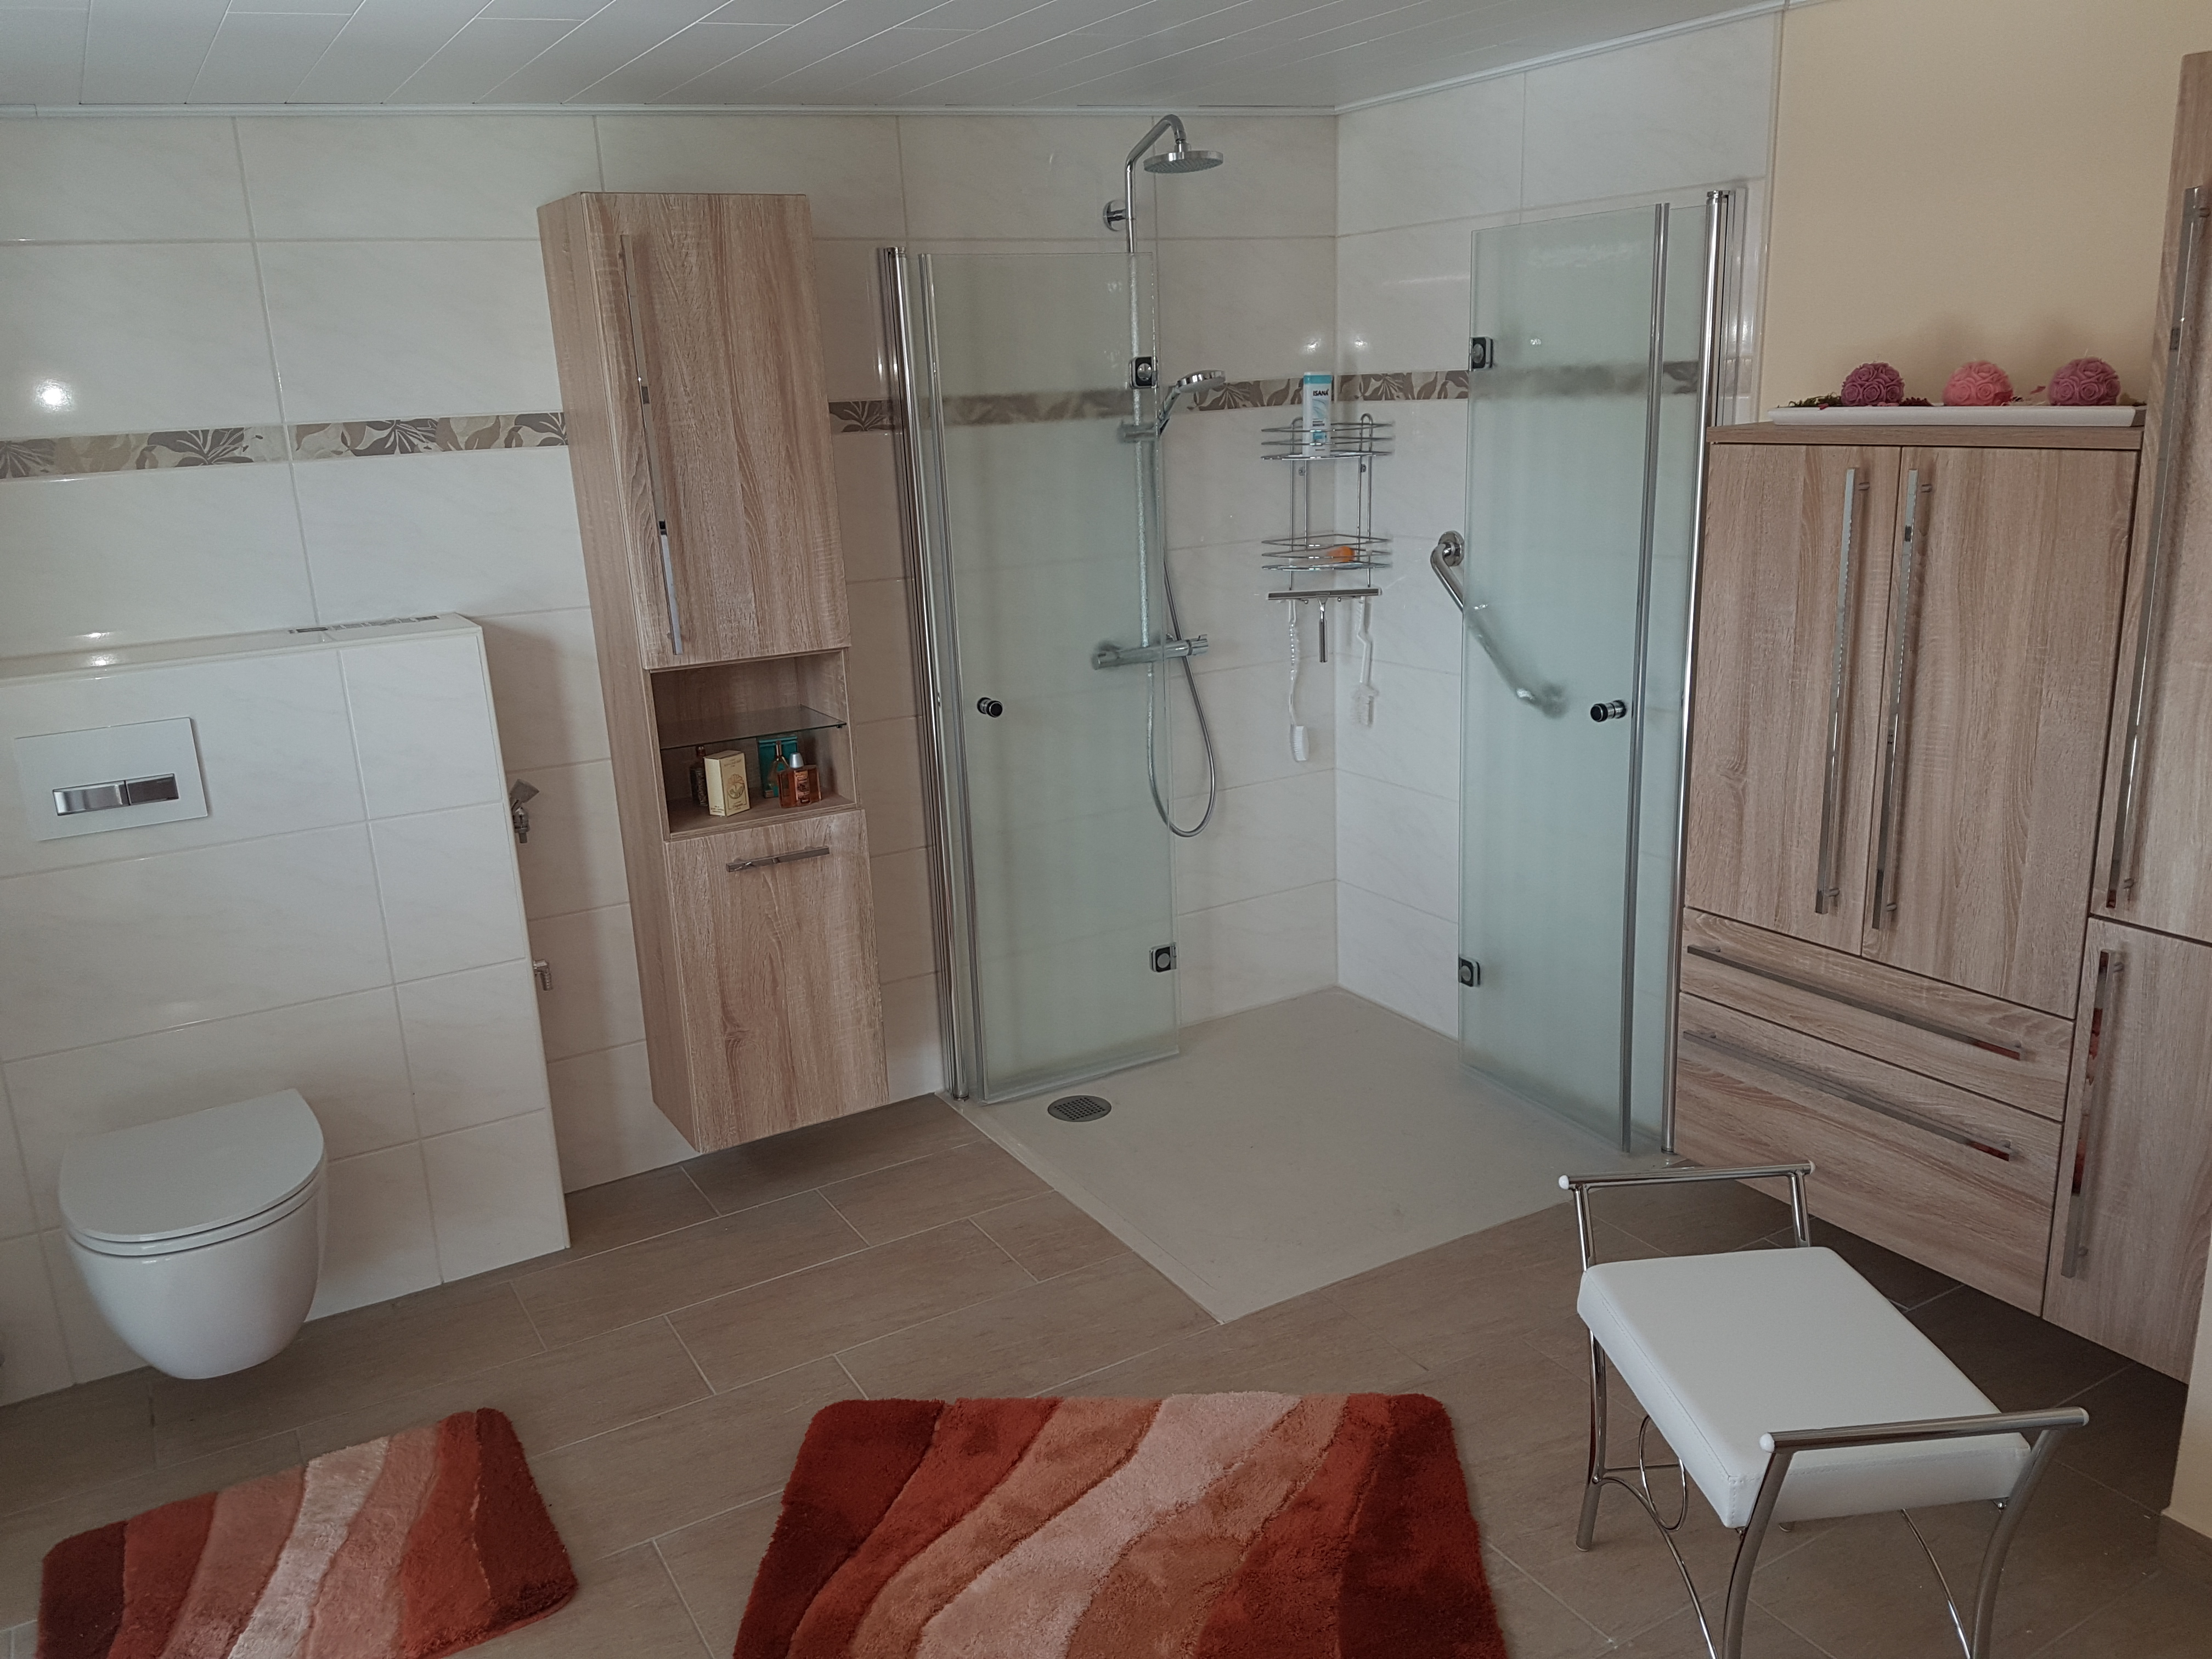 Modernes Bad mit barrierefreier Dusche von Gautsch Haustechnik